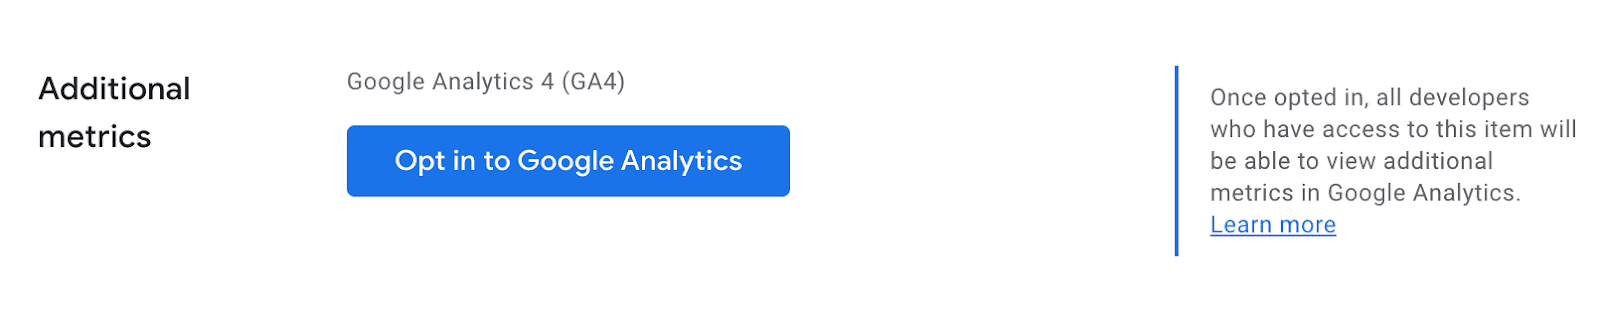 Chọn sử dụng giao diện người dùng cho Google Analytics trong Trang tổng quan dành cho nhà phát triển